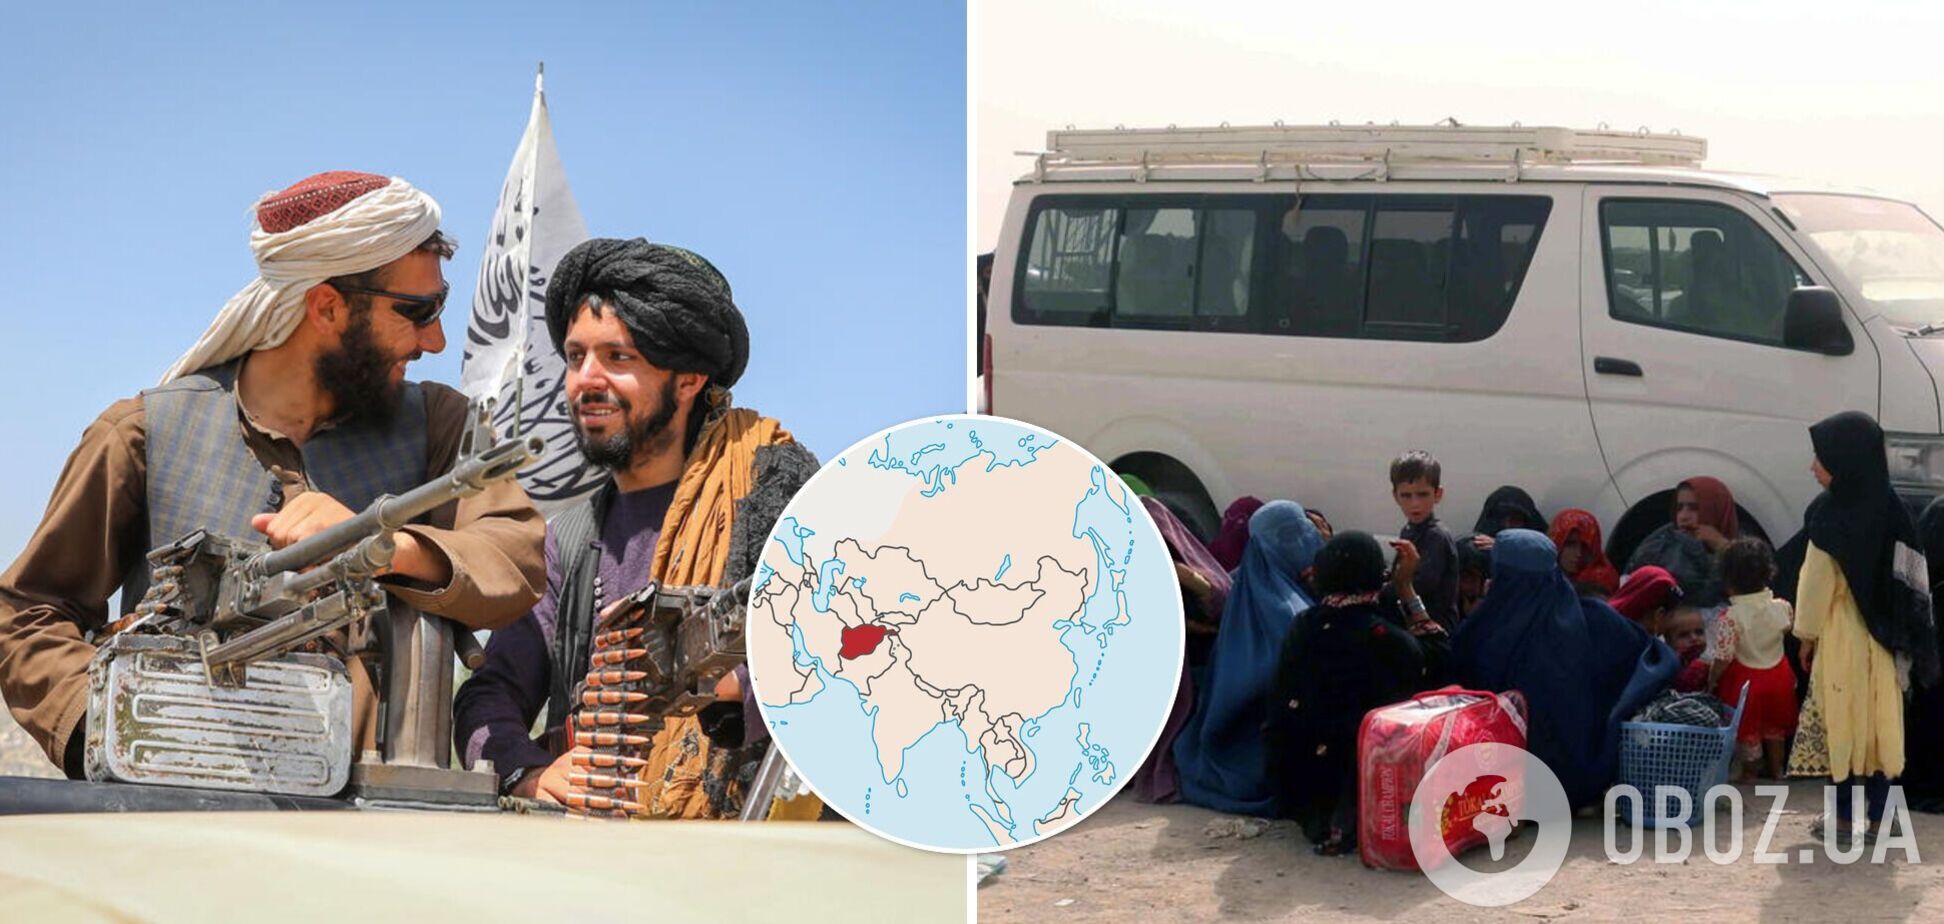 'Талібан' оголосив загальну амністію в Афганістані: що відбувається в країні. Фото і відео